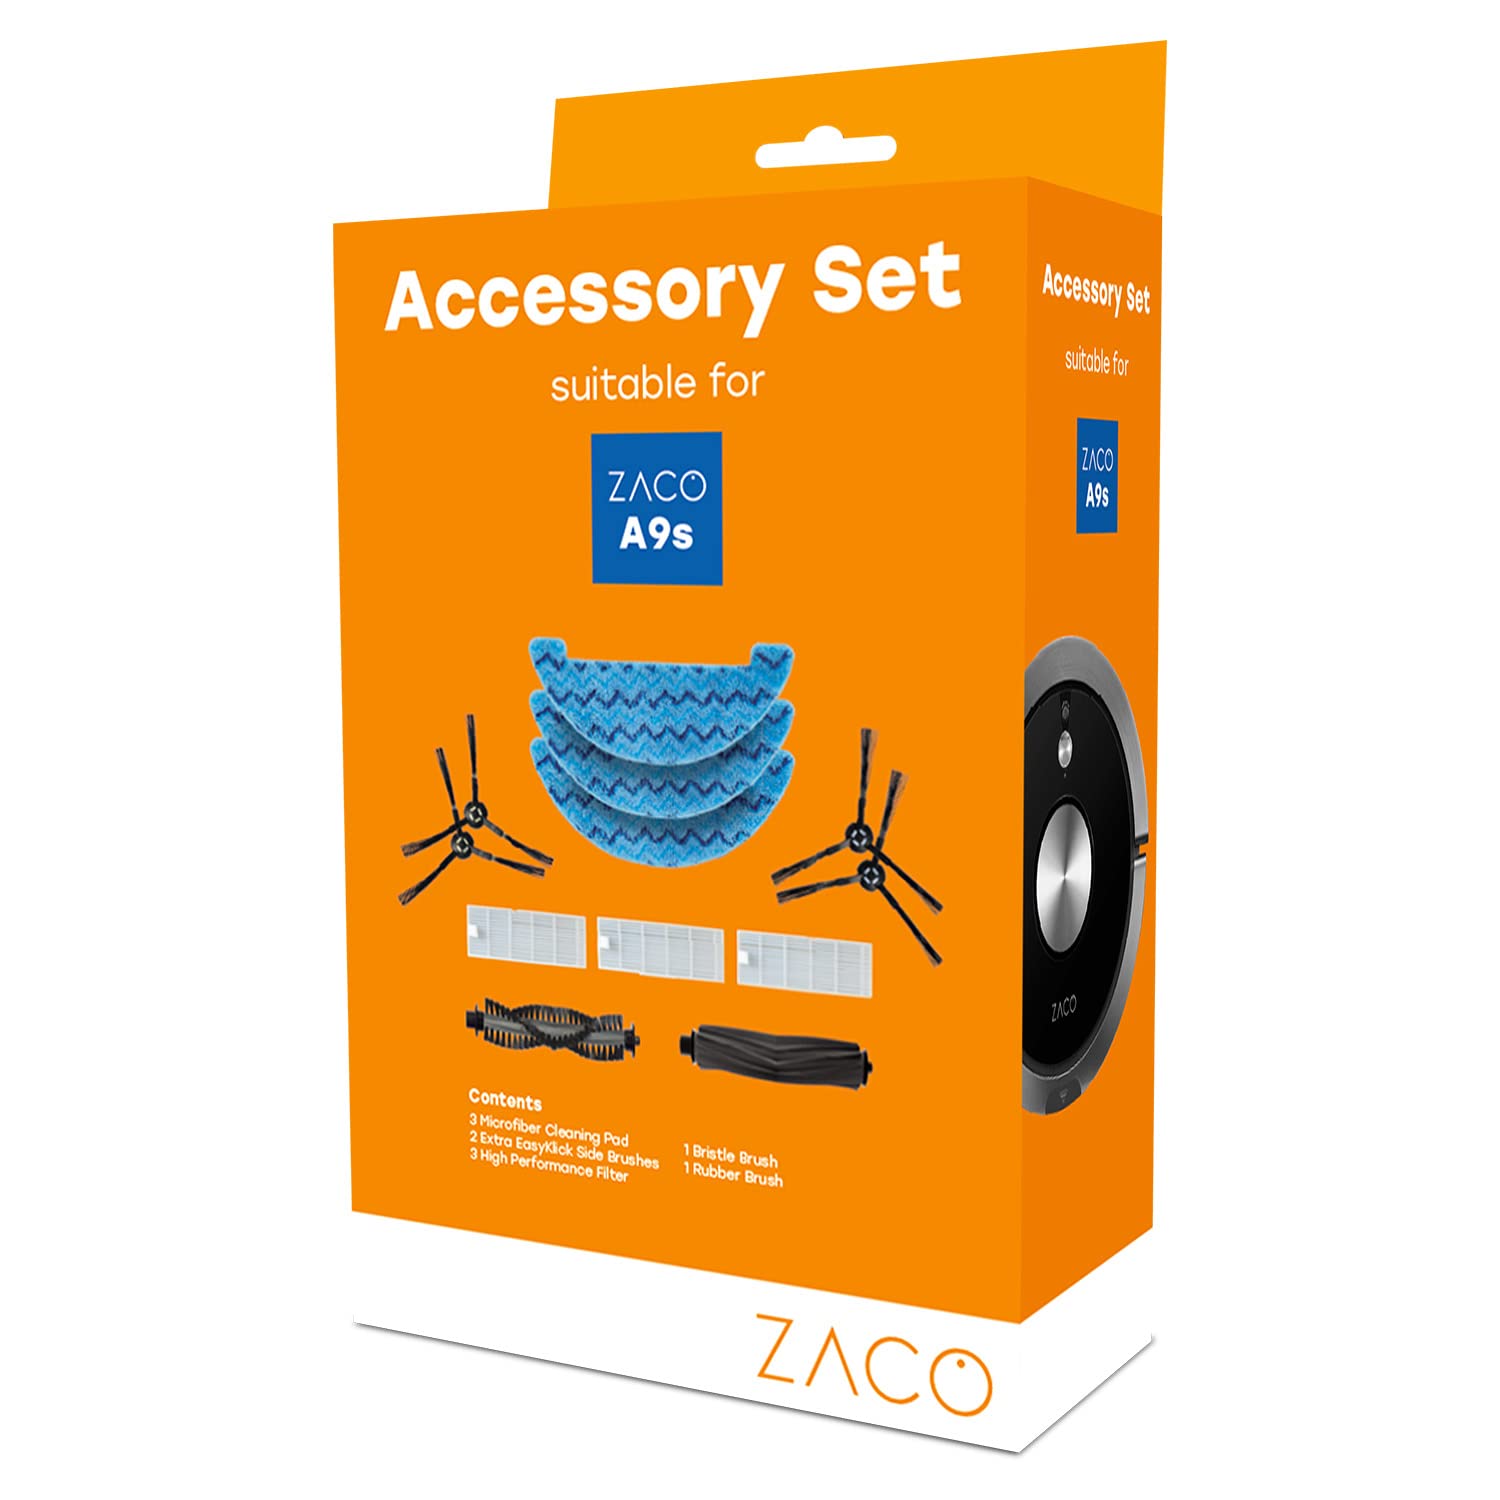 ZACO original Zubehör-Set passend für ZACO A9s Saug- und Wischroboter, inkl. Seitenbürsten, Hauptbürsten, Wischtücher und Filter